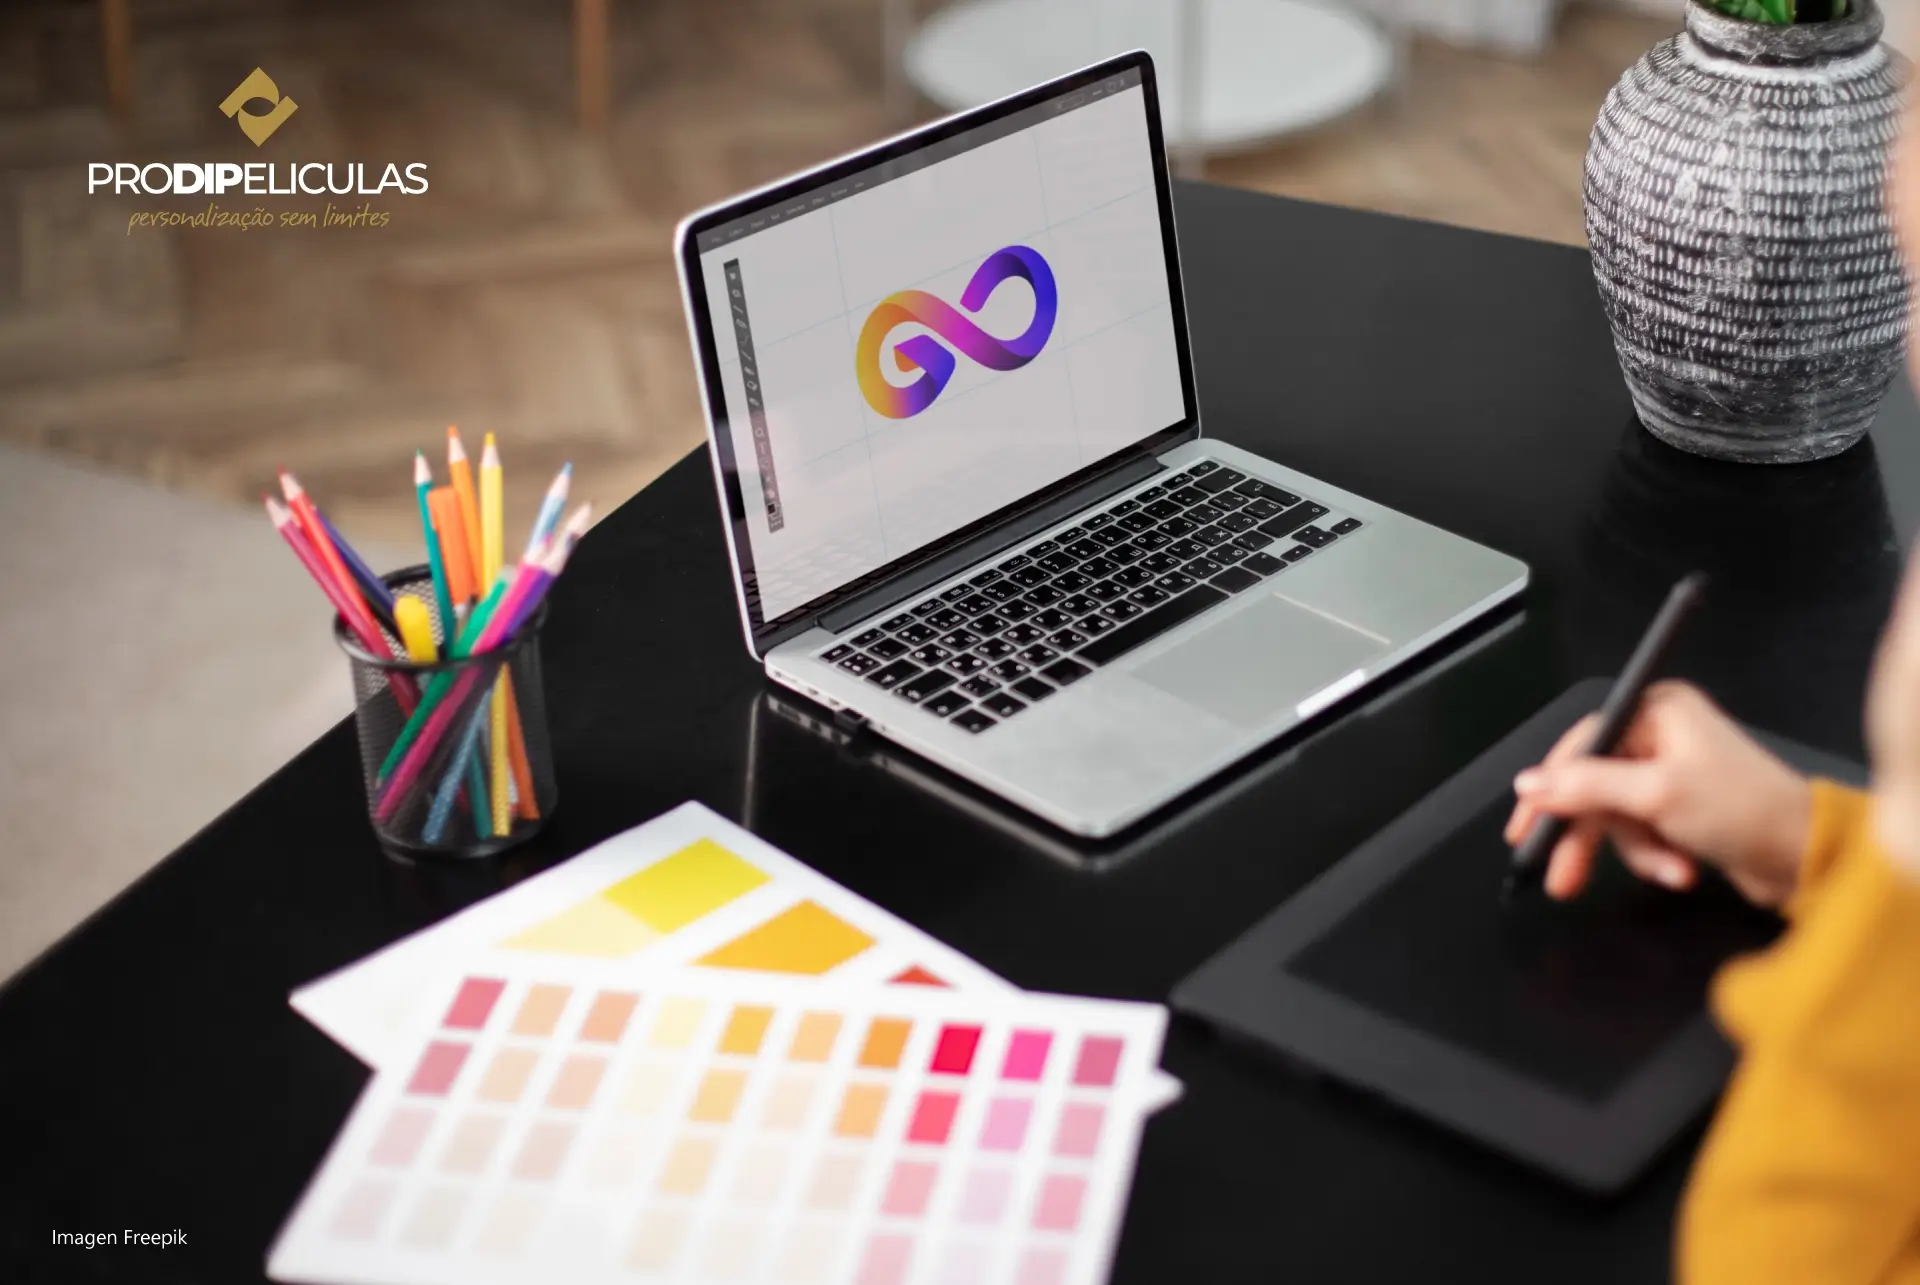 Pessoa projetando em um laptop e paleta de cores na mesa